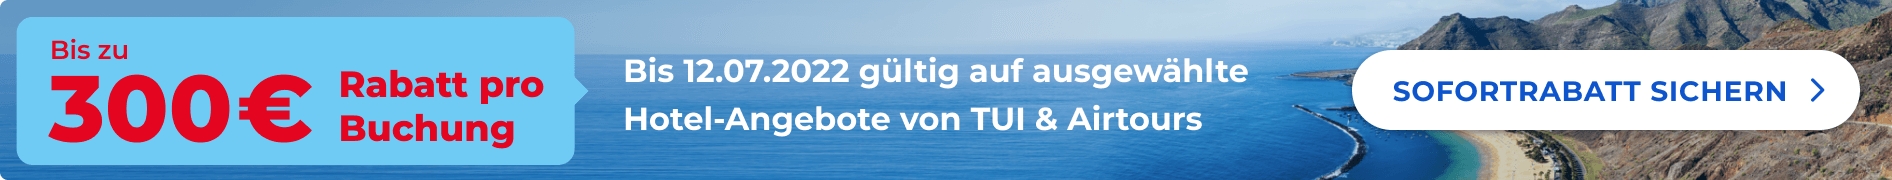 TUI und airtours bieten bis zum 12.07. einen zusätzlichen Nachlass von bis zu 300 Euro pro Buchung auf ausgewählte Hotels. Der Rabatt wird nach der Buchung in der Rechnung von TUI automatisch abgezogen.